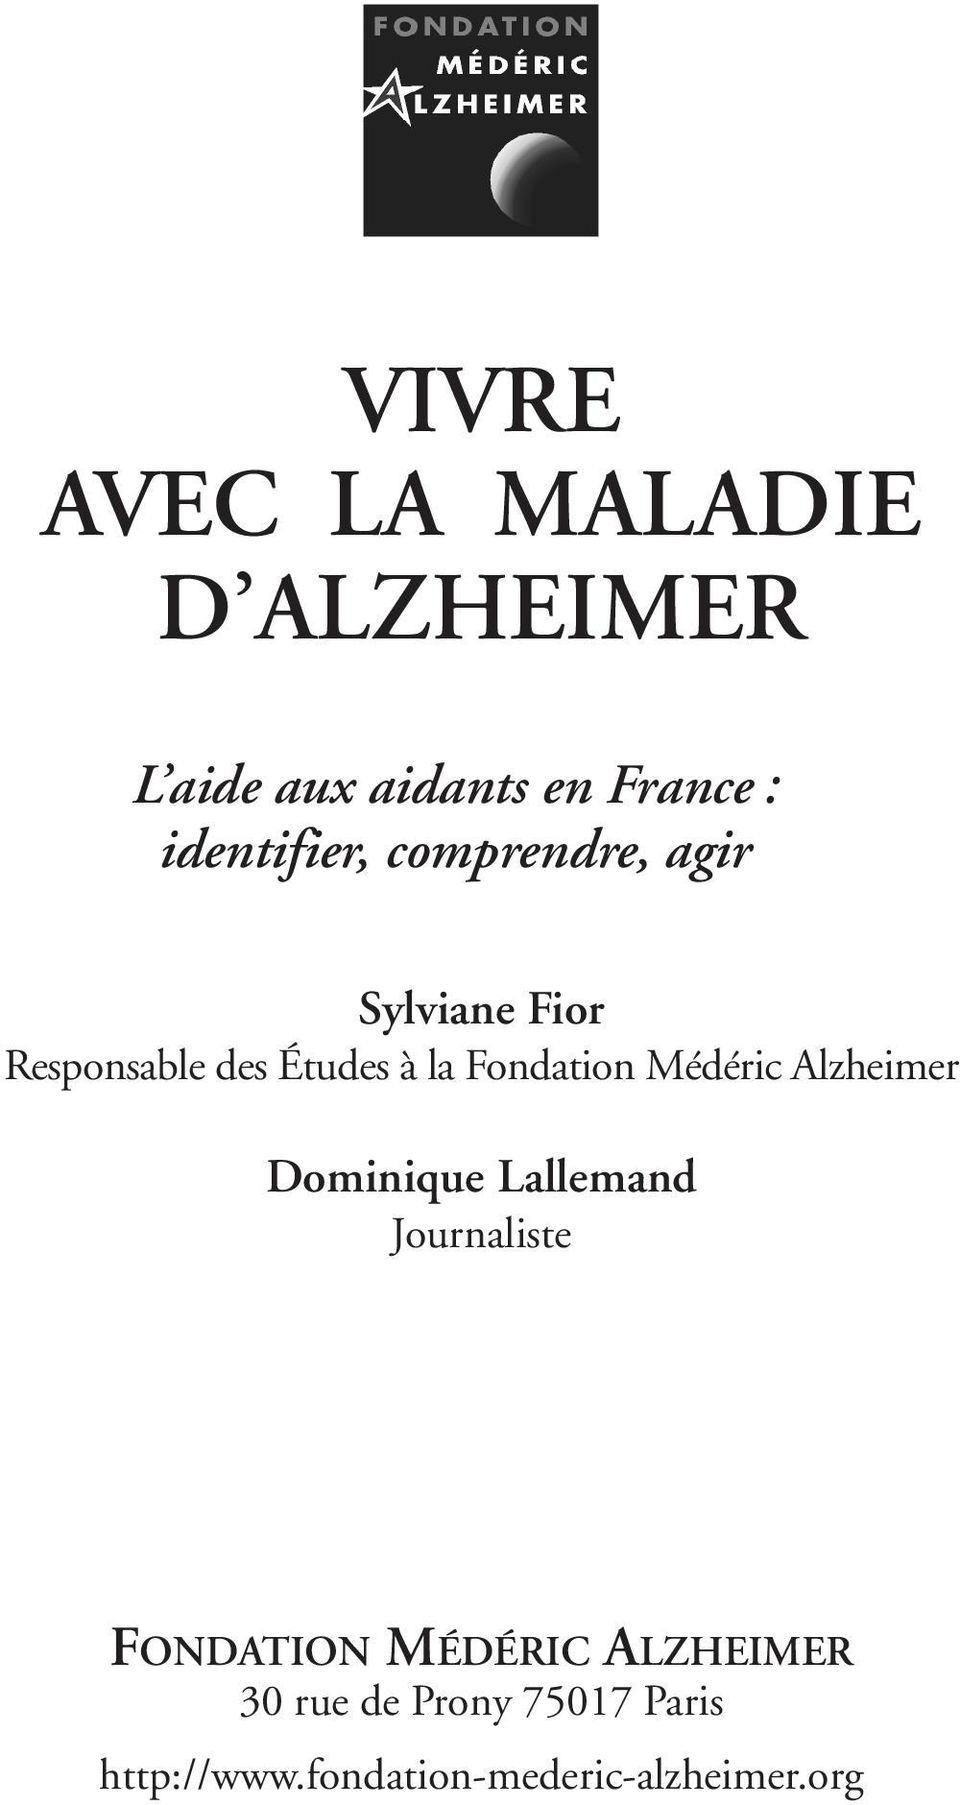 Fondation Médéric Alzheimer Dominique Lallemand Journaliste FONDATION